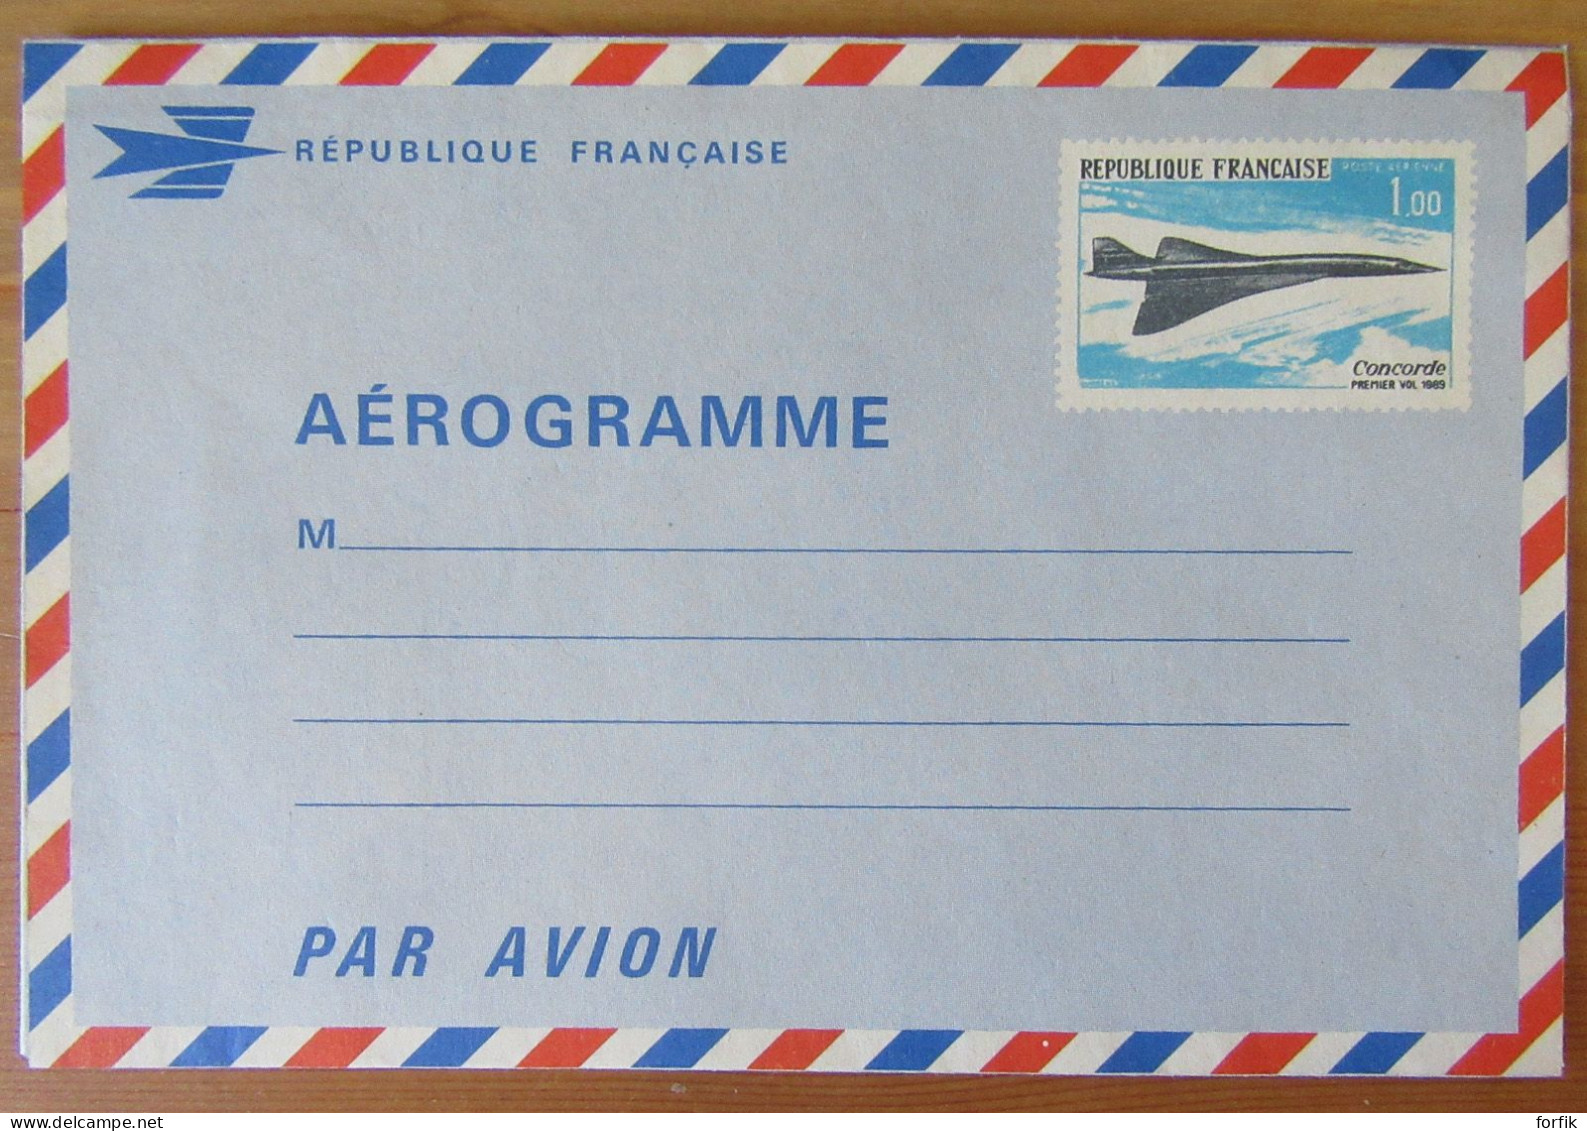 France - Aérogramme Concorde 1001-AER Neuf - Aérogrammes